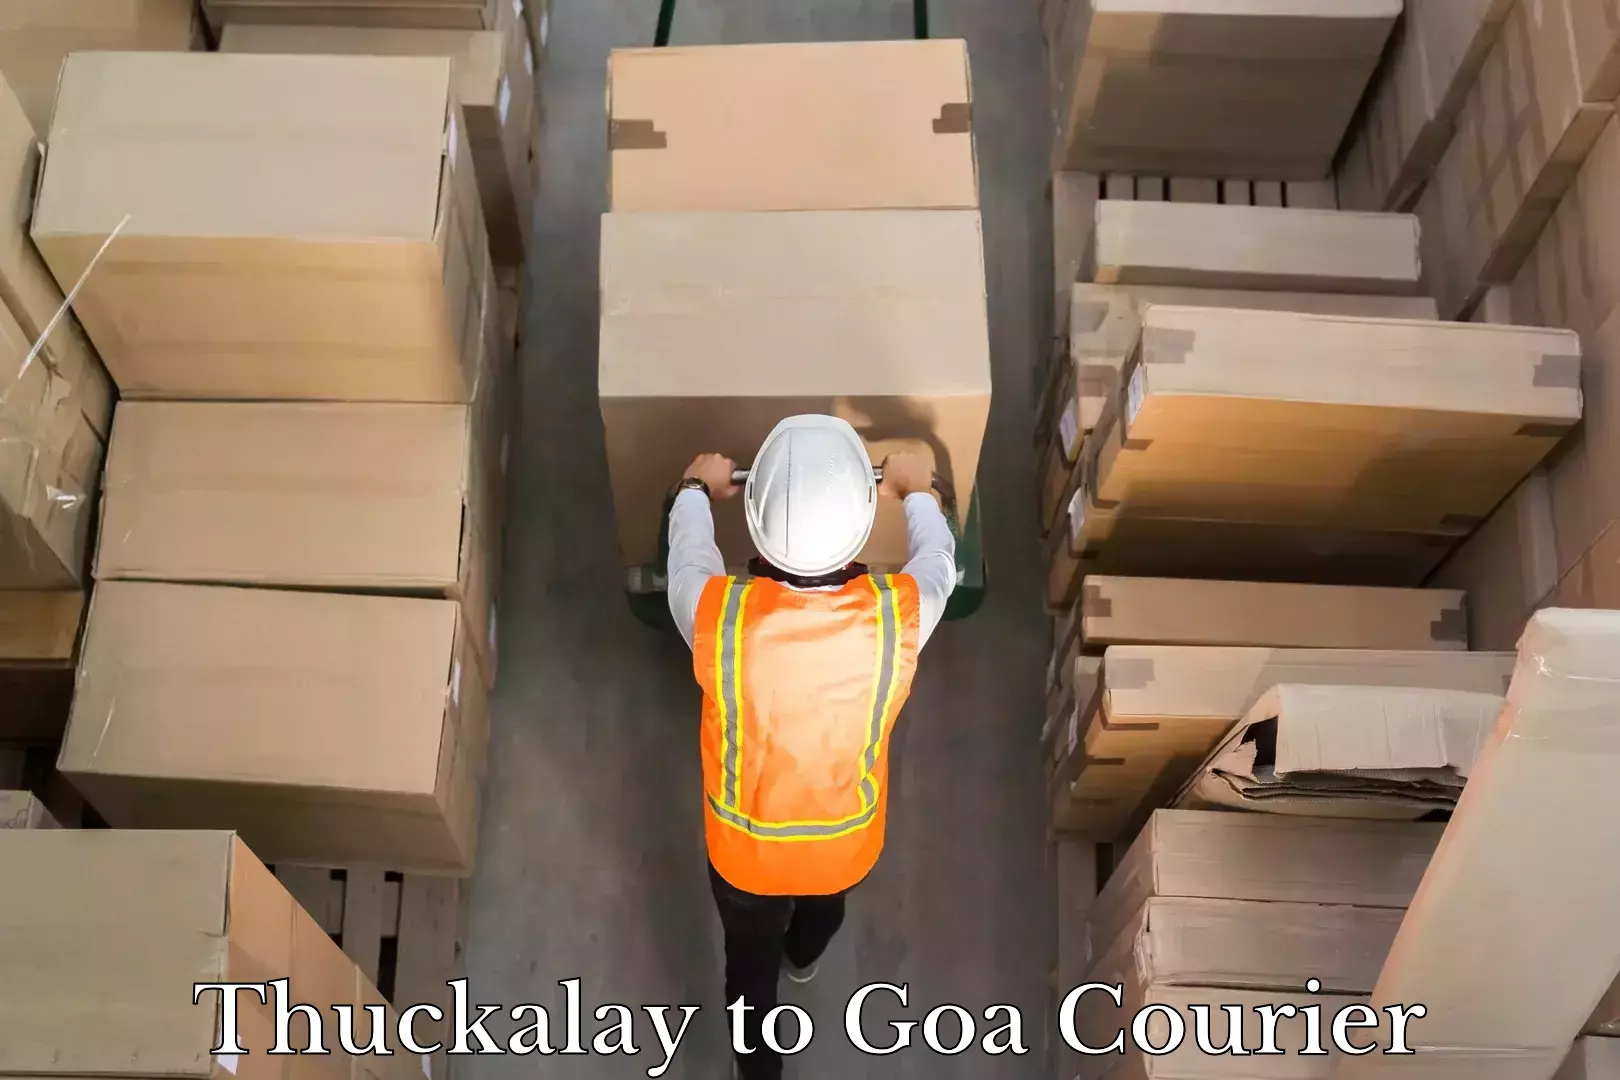 Modern courier technology Thuckalay to Goa